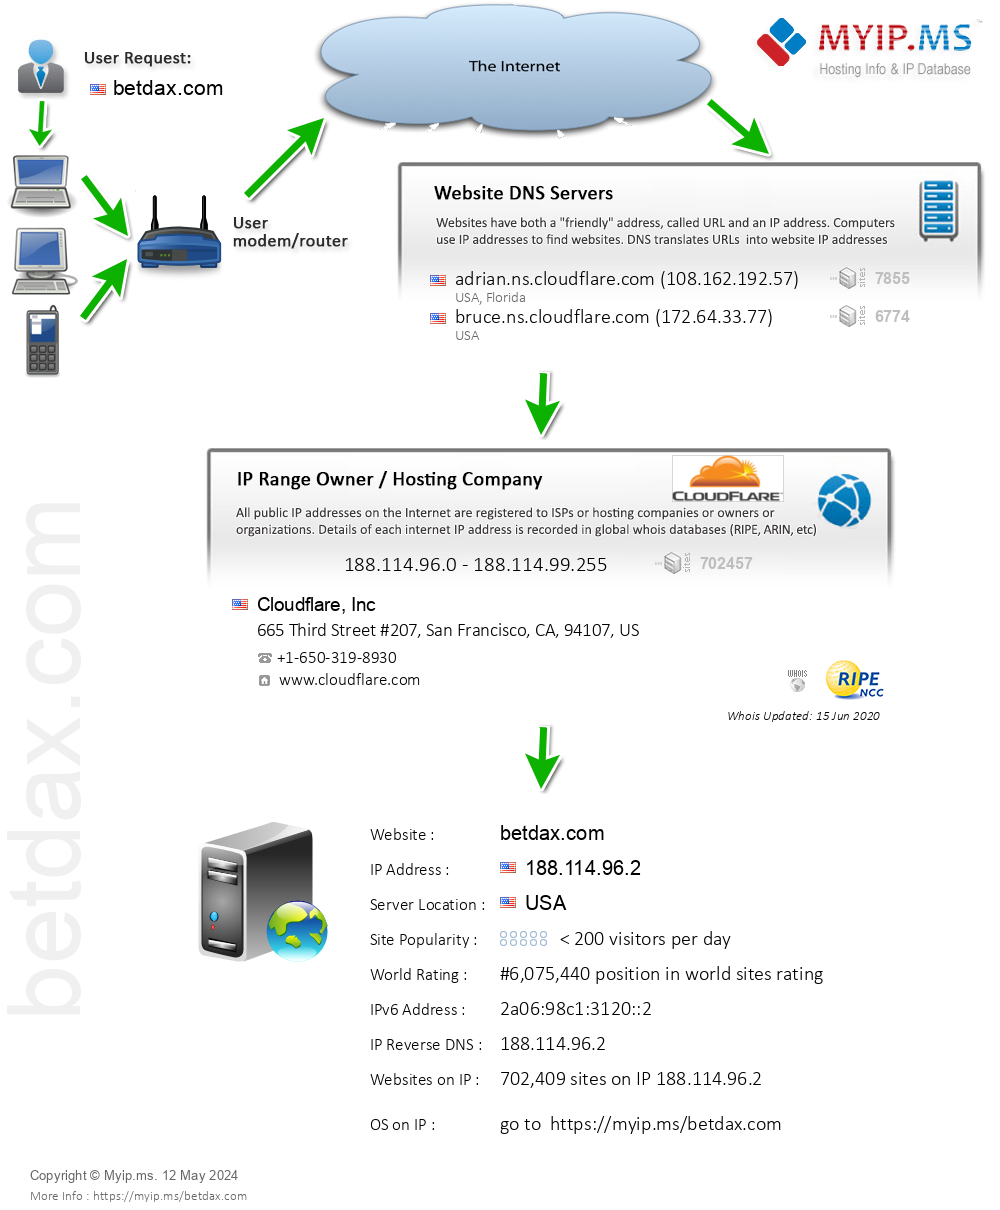 Betdax.com - Website Hosting Visual IP Diagram